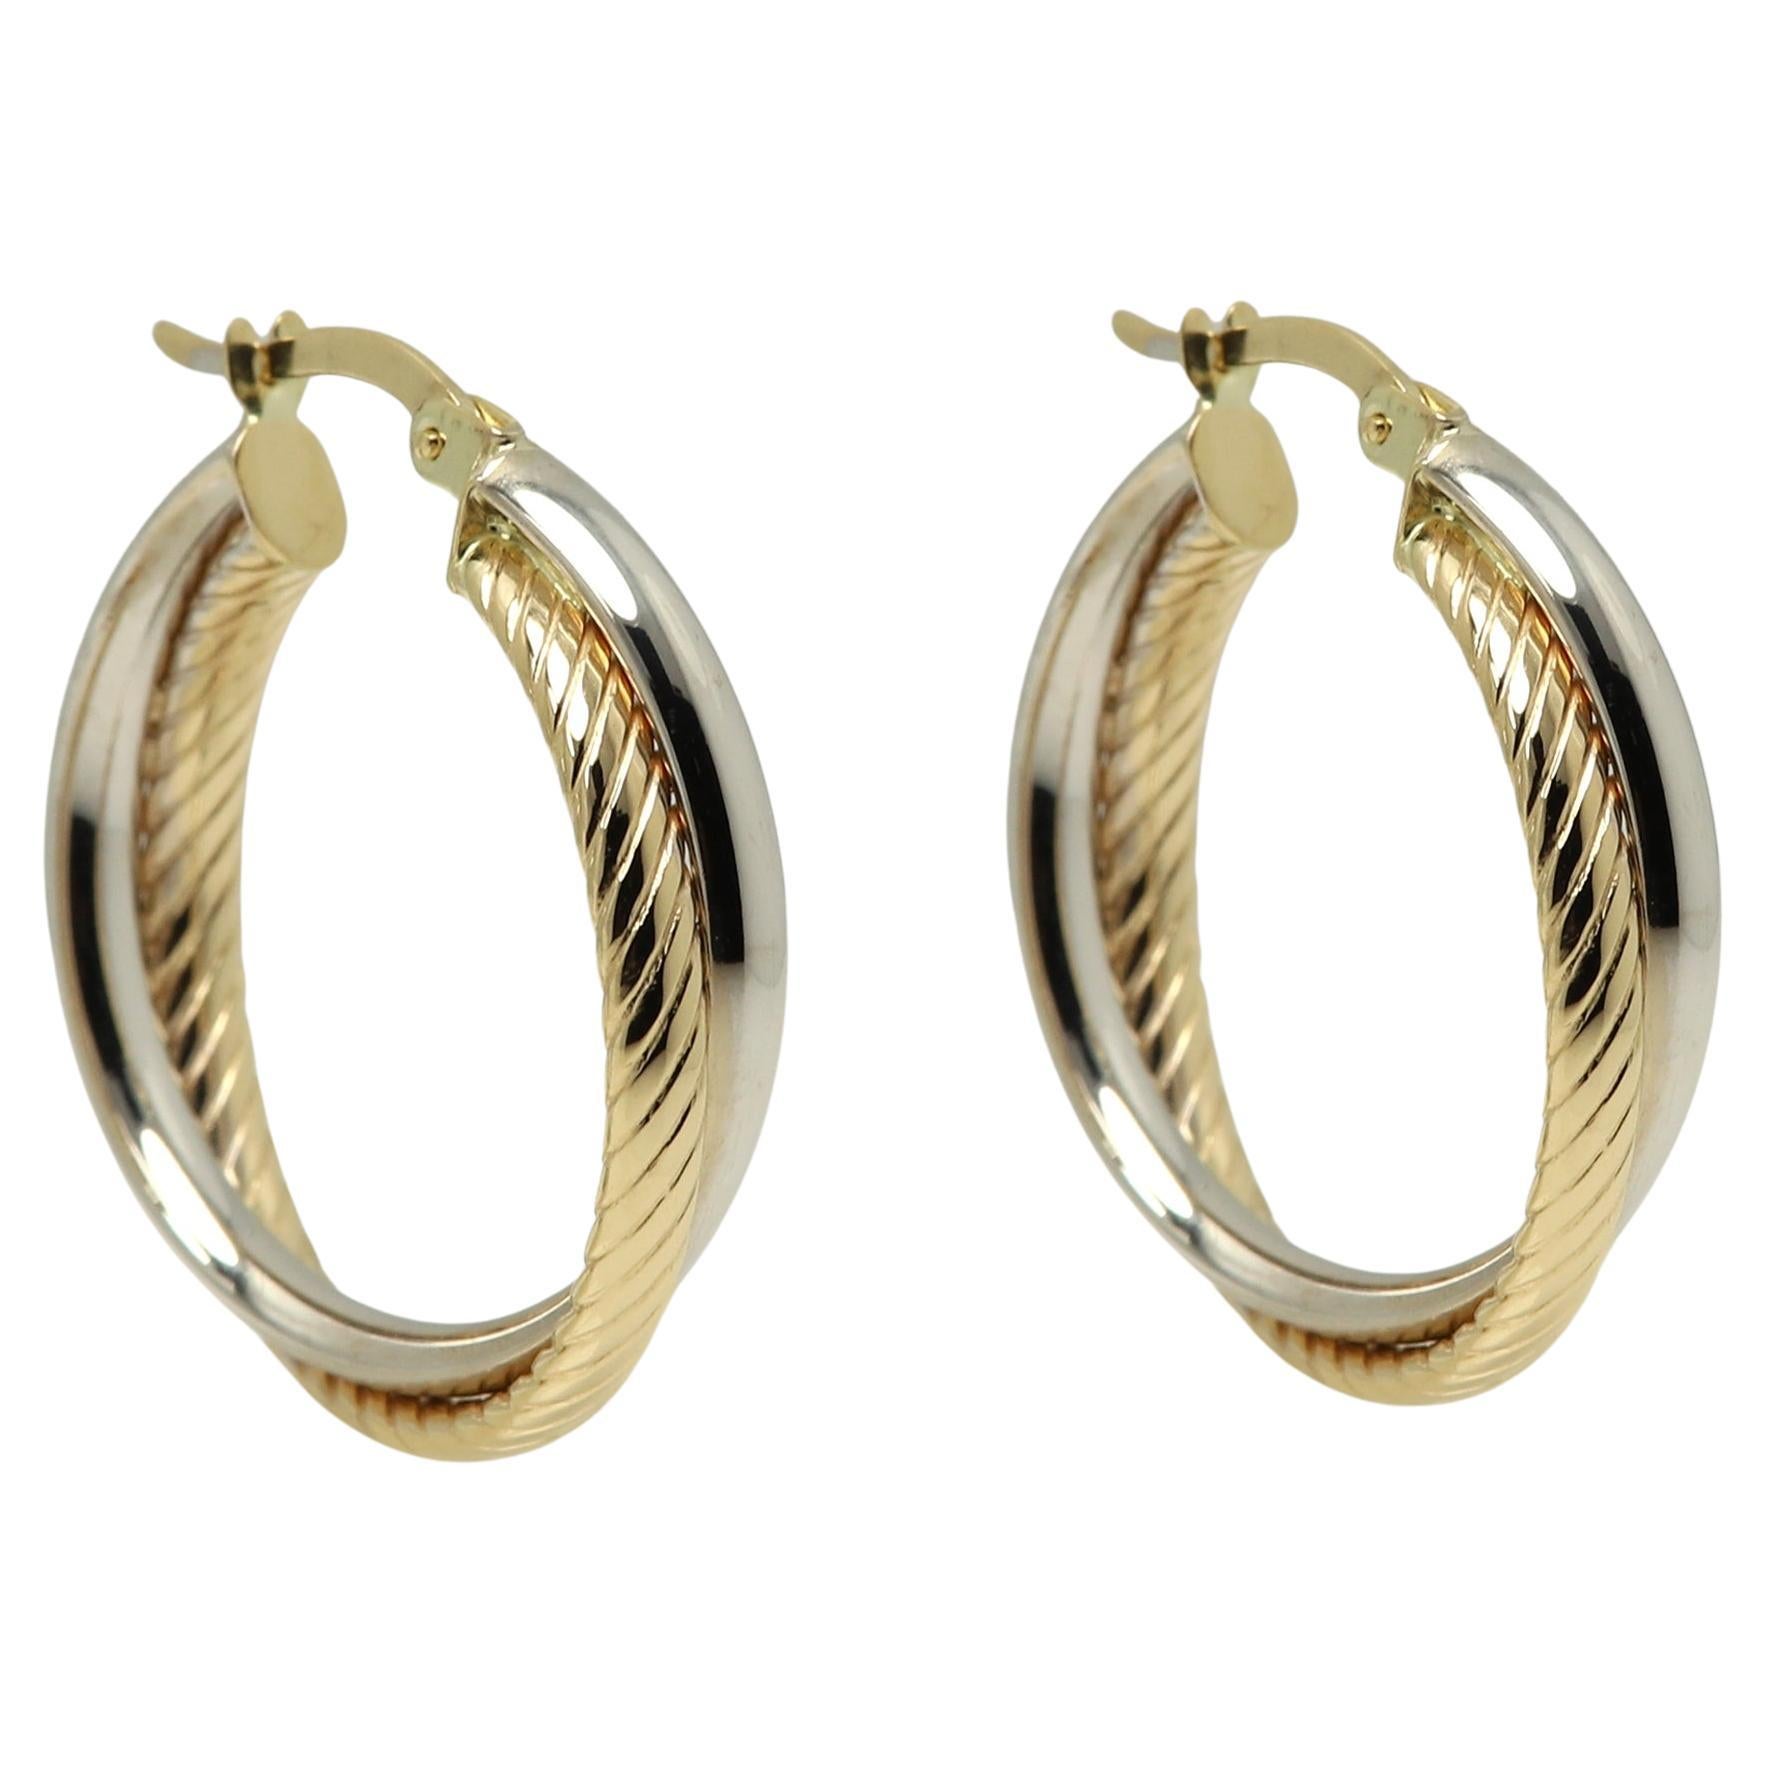 Swirl Italian Hoops 14 Karat Solid Gold Earrings Gold Hoops Artistic Earrings